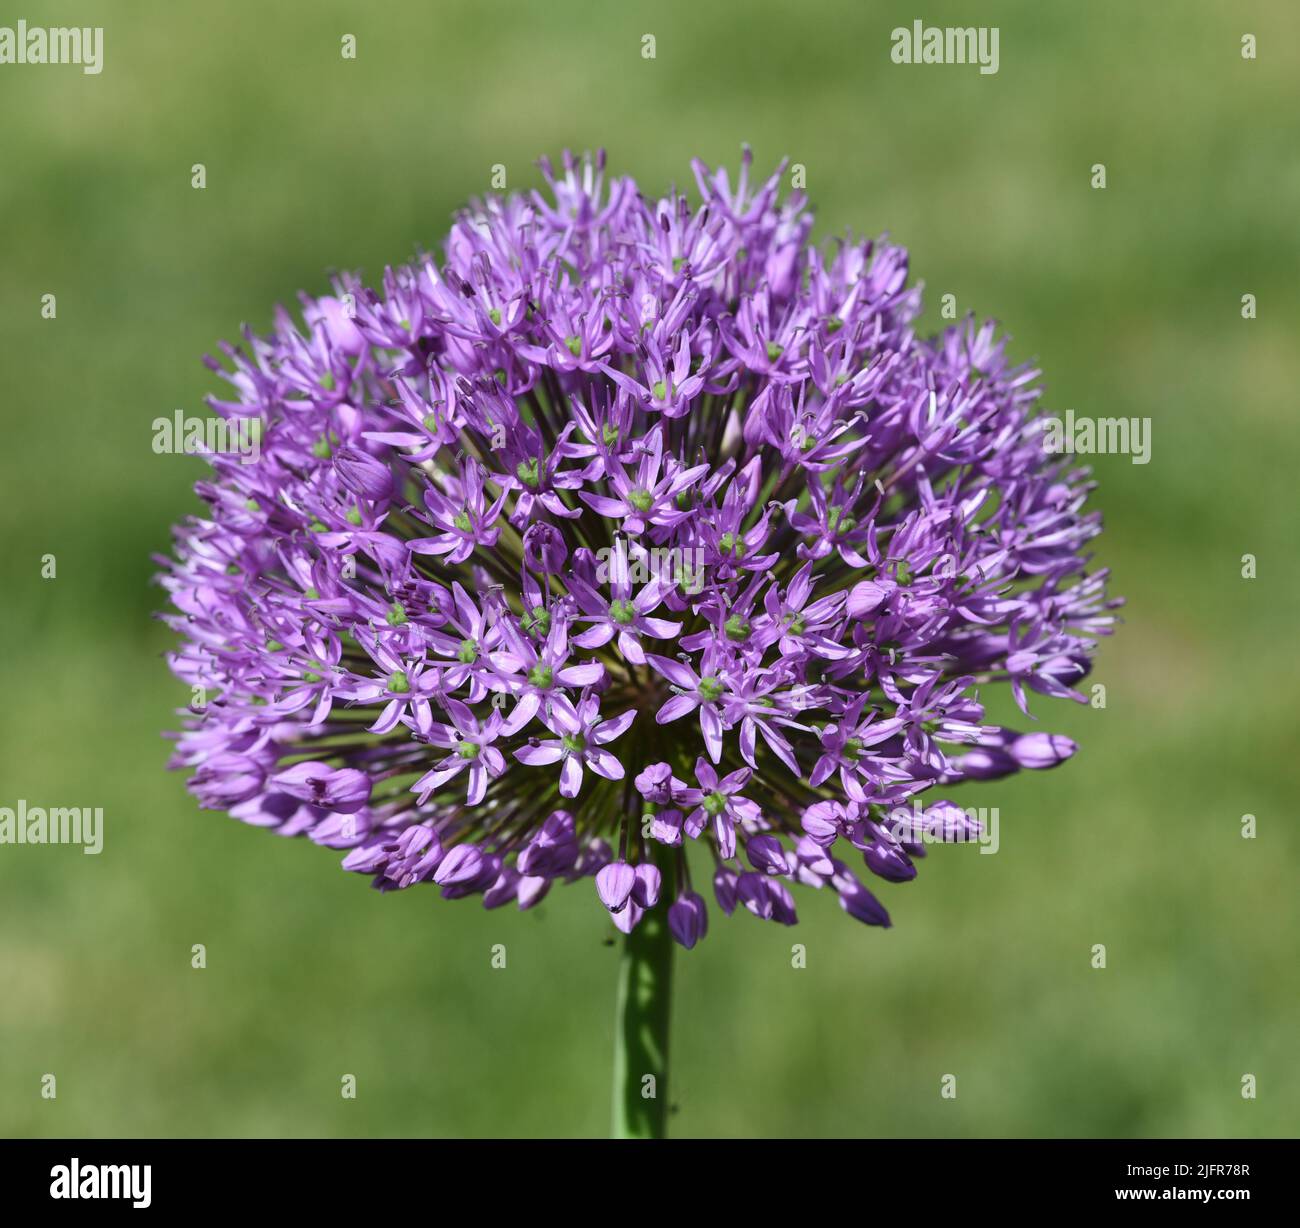 Zierlauch, Riesenlauch, Allium Giganteum ist eine wunderschoene Zierpflanze im Garten und hat lila Blueten. Ornamental Lily, Giant Lily, Allium Gigant Stock Photo